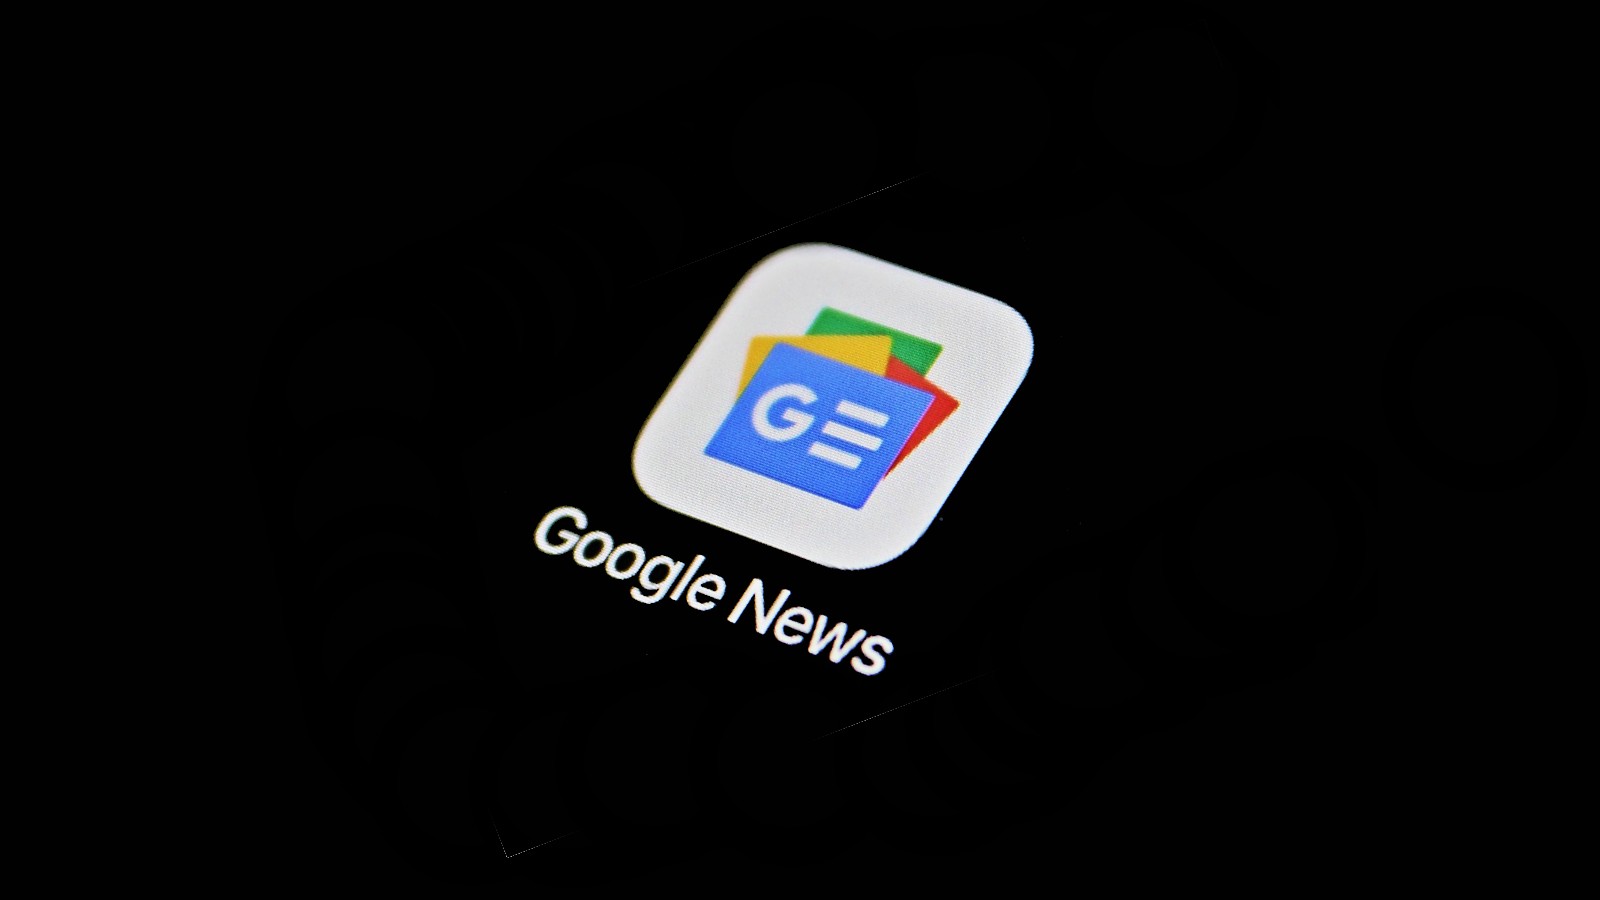 Rusya, Ukrayna’daki savaş hakkında “güvenilmez” bilgiler nedeniyle Google News’i yasakladı